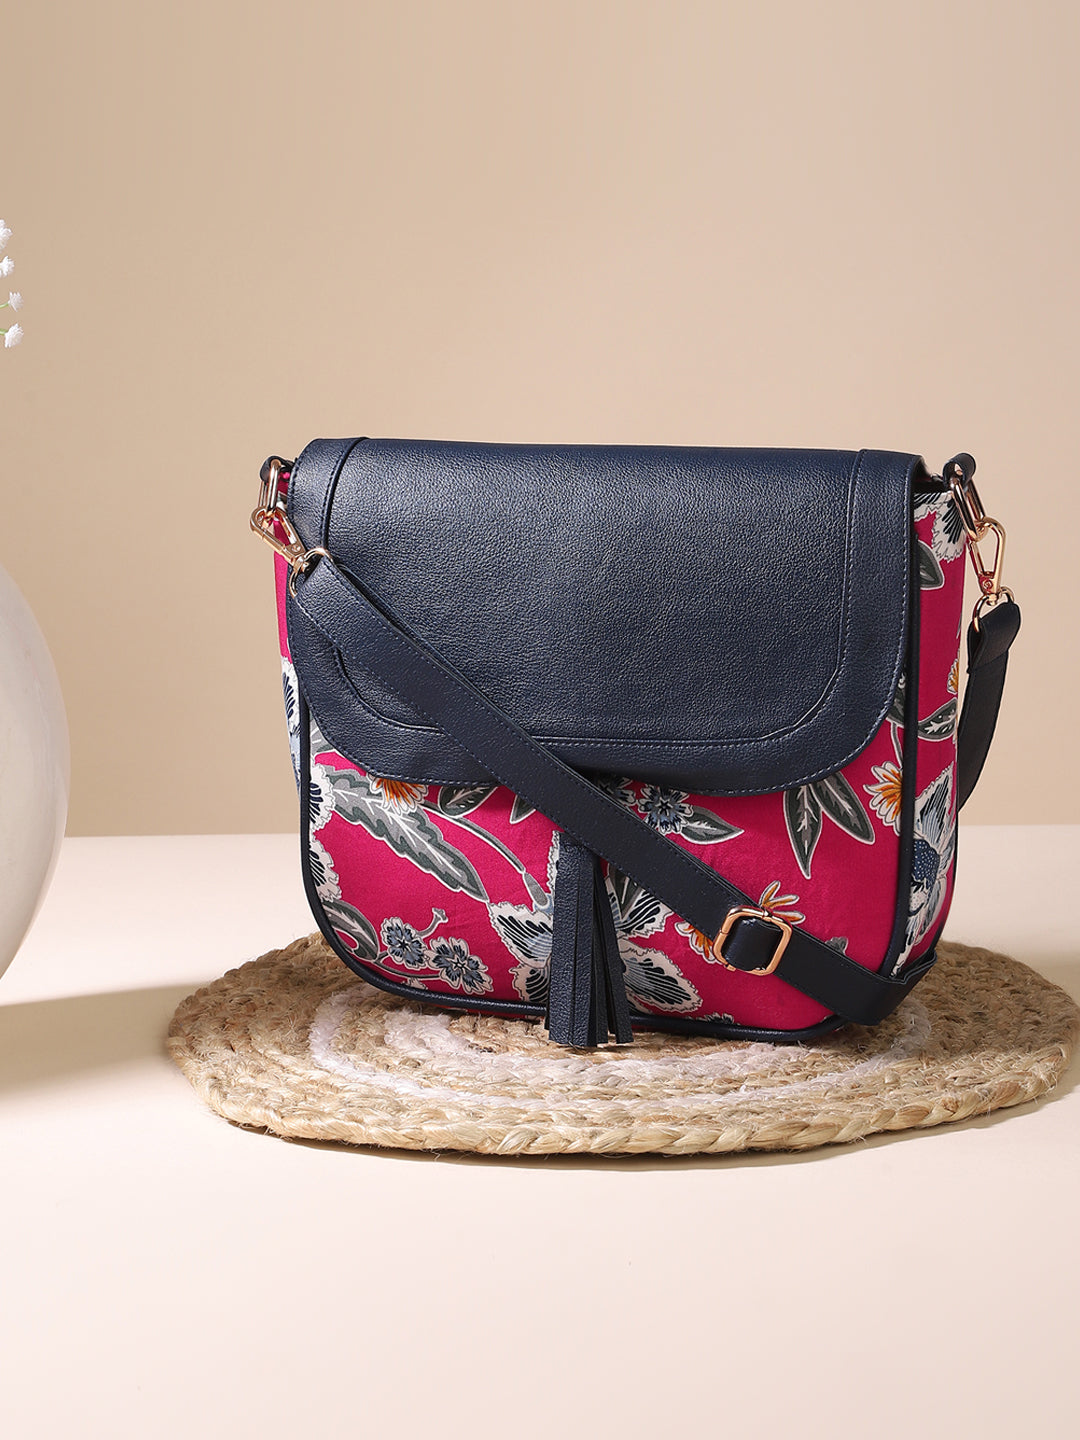 Floral Print Sling Bag With Adjustable & Adjustable & Detachable Strap